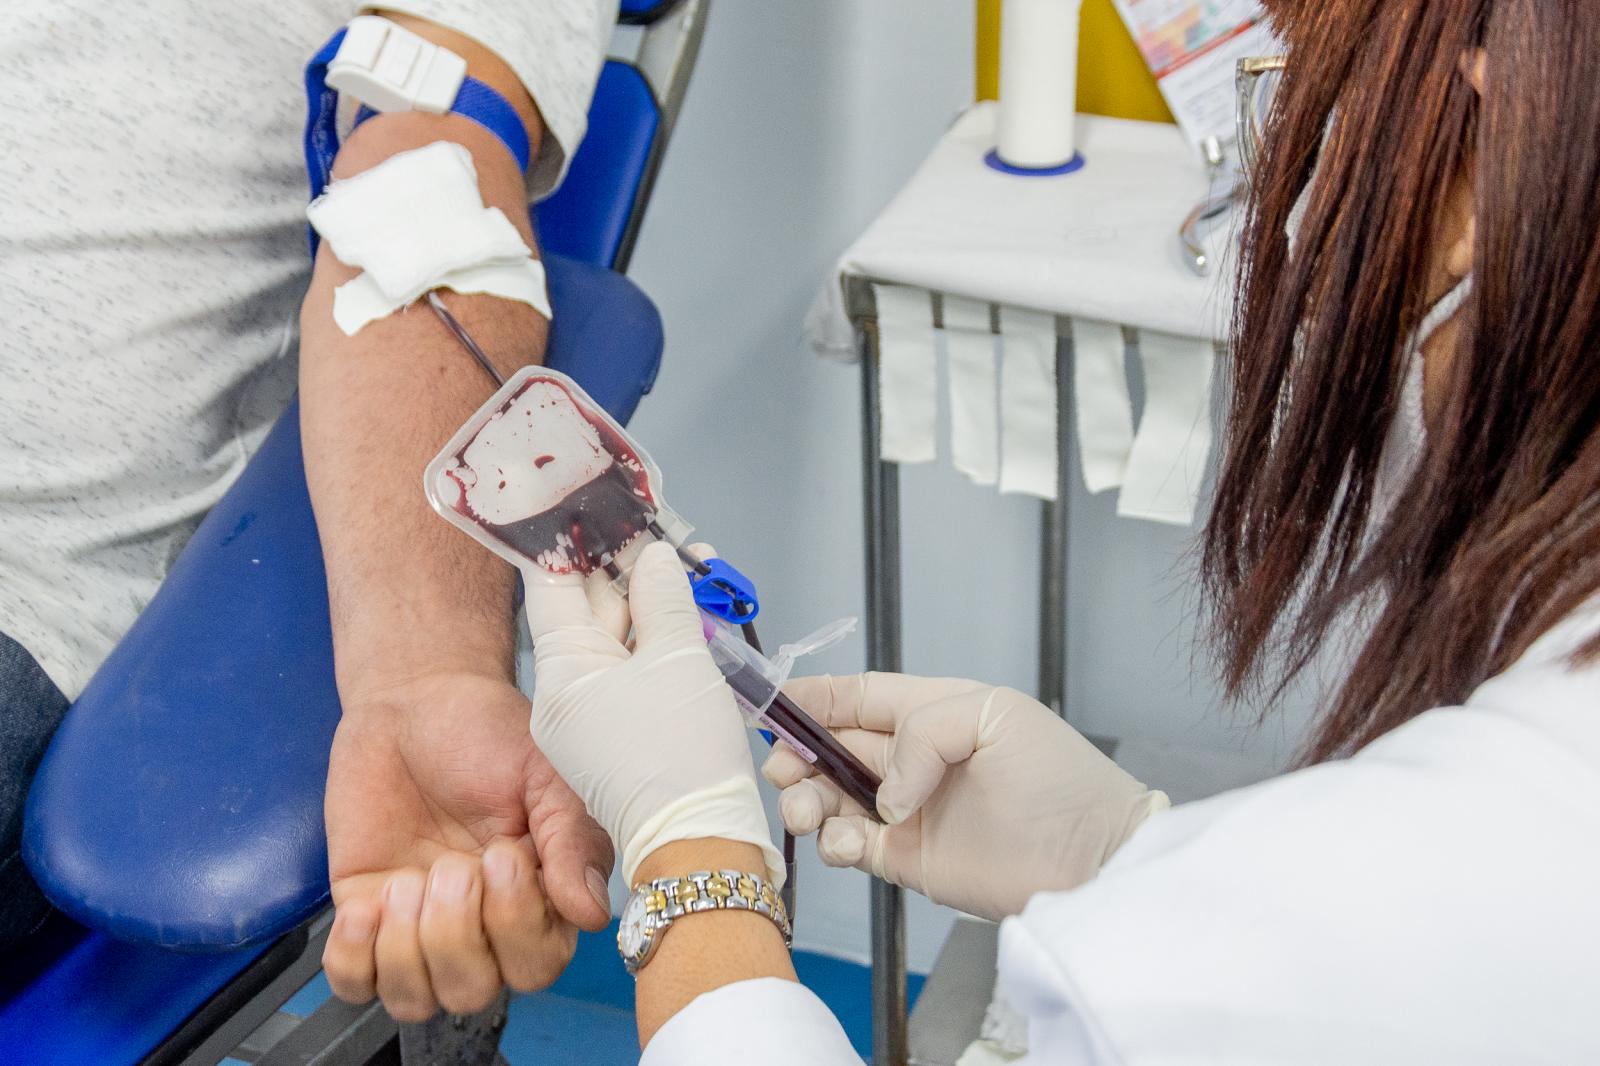 Doação de Sangue: Dezesseis pessoas doam pela primeira vez durante campanha do Rotary Club